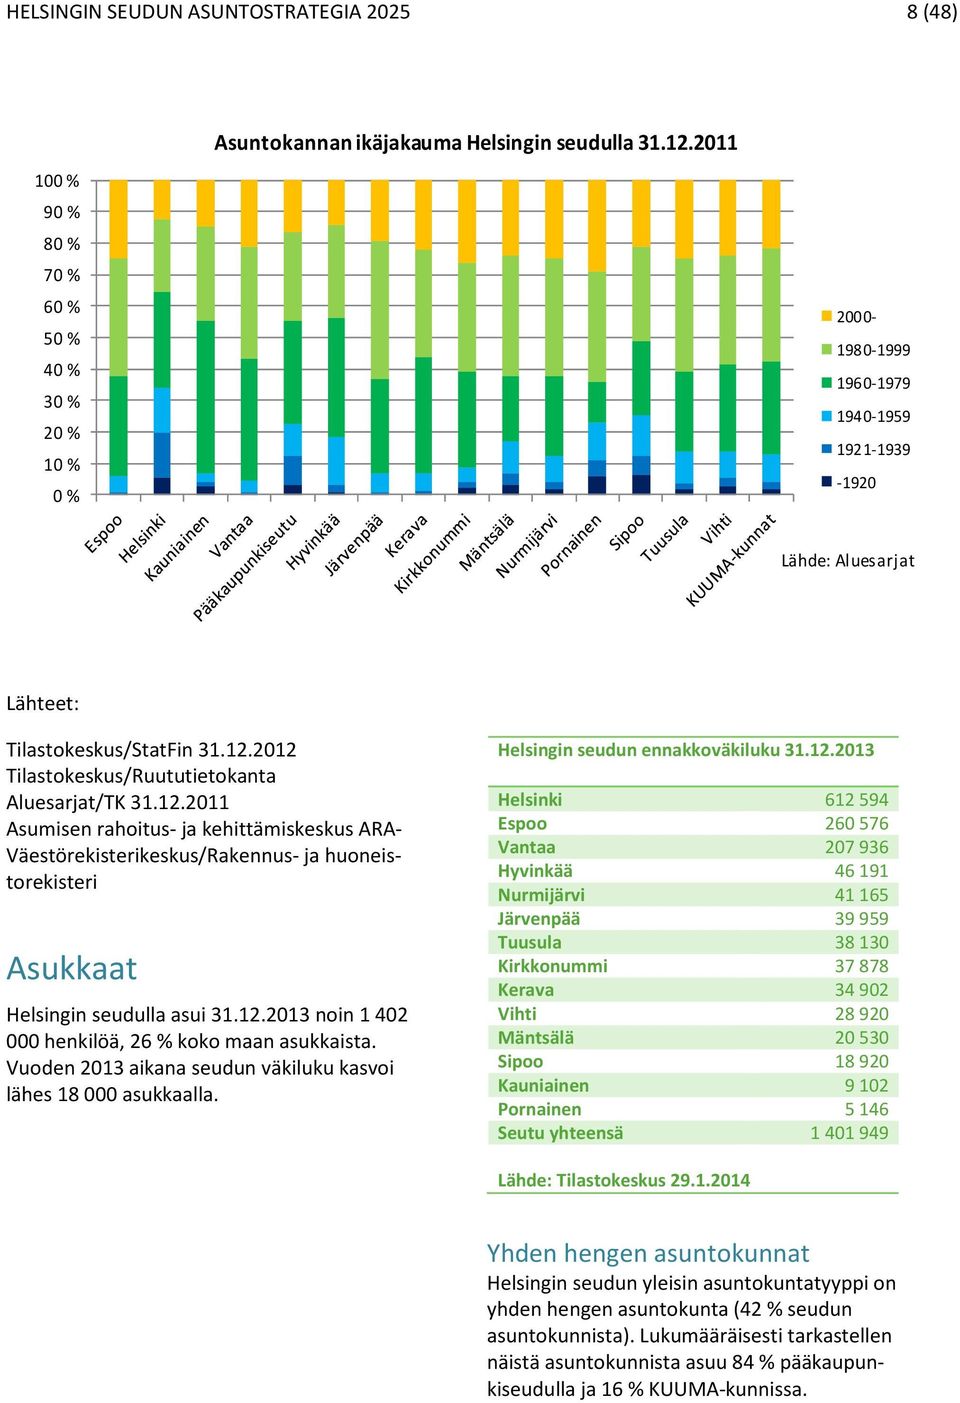 2012 Tilastokeskus/Ruututietokanta Aluesarjat/TK 31.12.2011 Asumisen rahoitus- ja kehittämiskeskus ARA- Väestörekisterikeskus/Rakennus- ja huoneistorekisteri Asukkaat Helsingin seudulla asui 31.12.2013 noin 1 402 000 henkilöä, 26 % koko maan asukkaista.